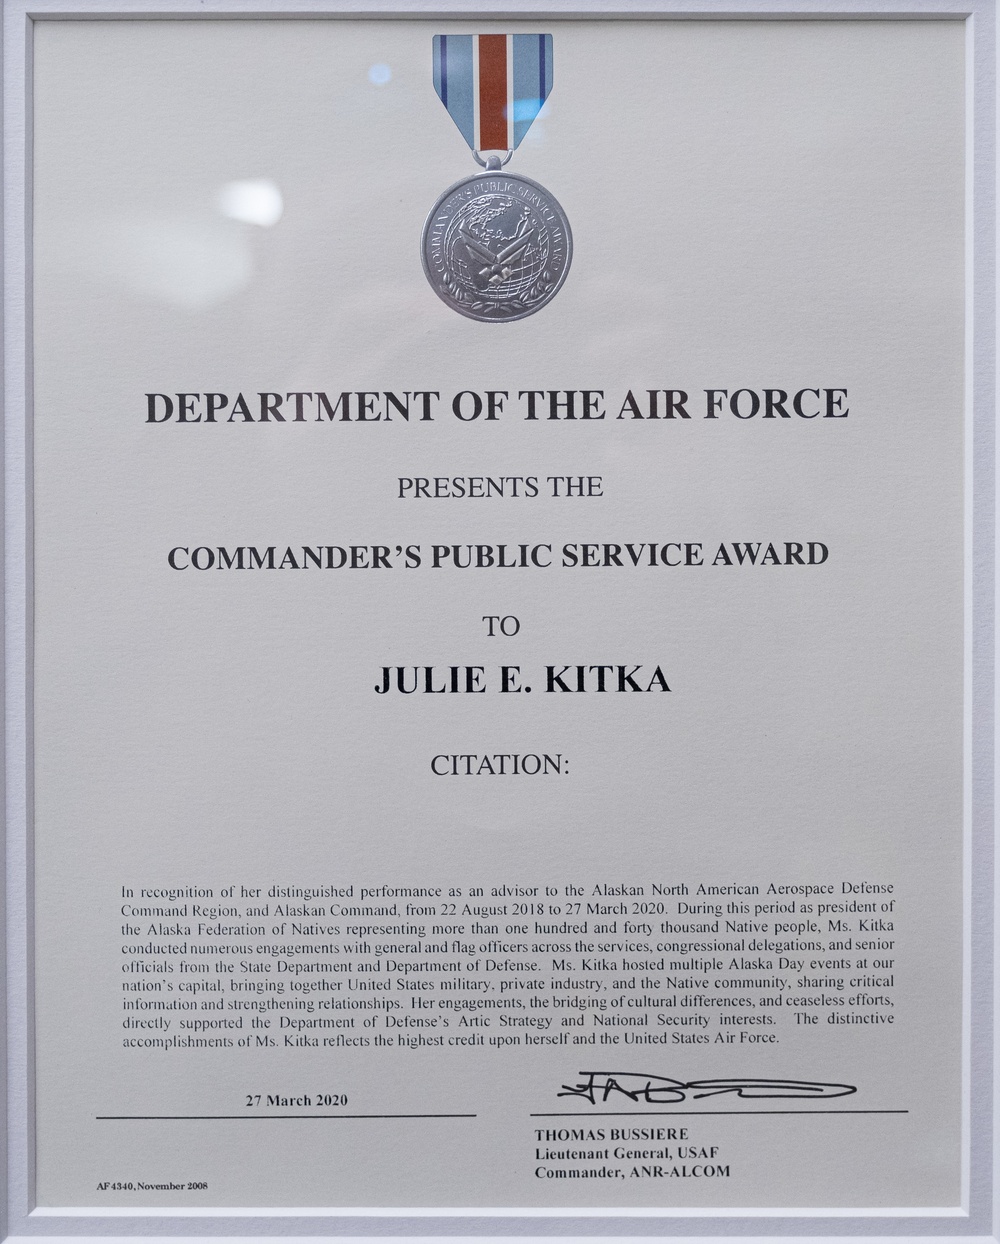 Alaskan NORAD Command Region, Alaskan Command, and Eleventh Air Force Commander Presents Public Service Award